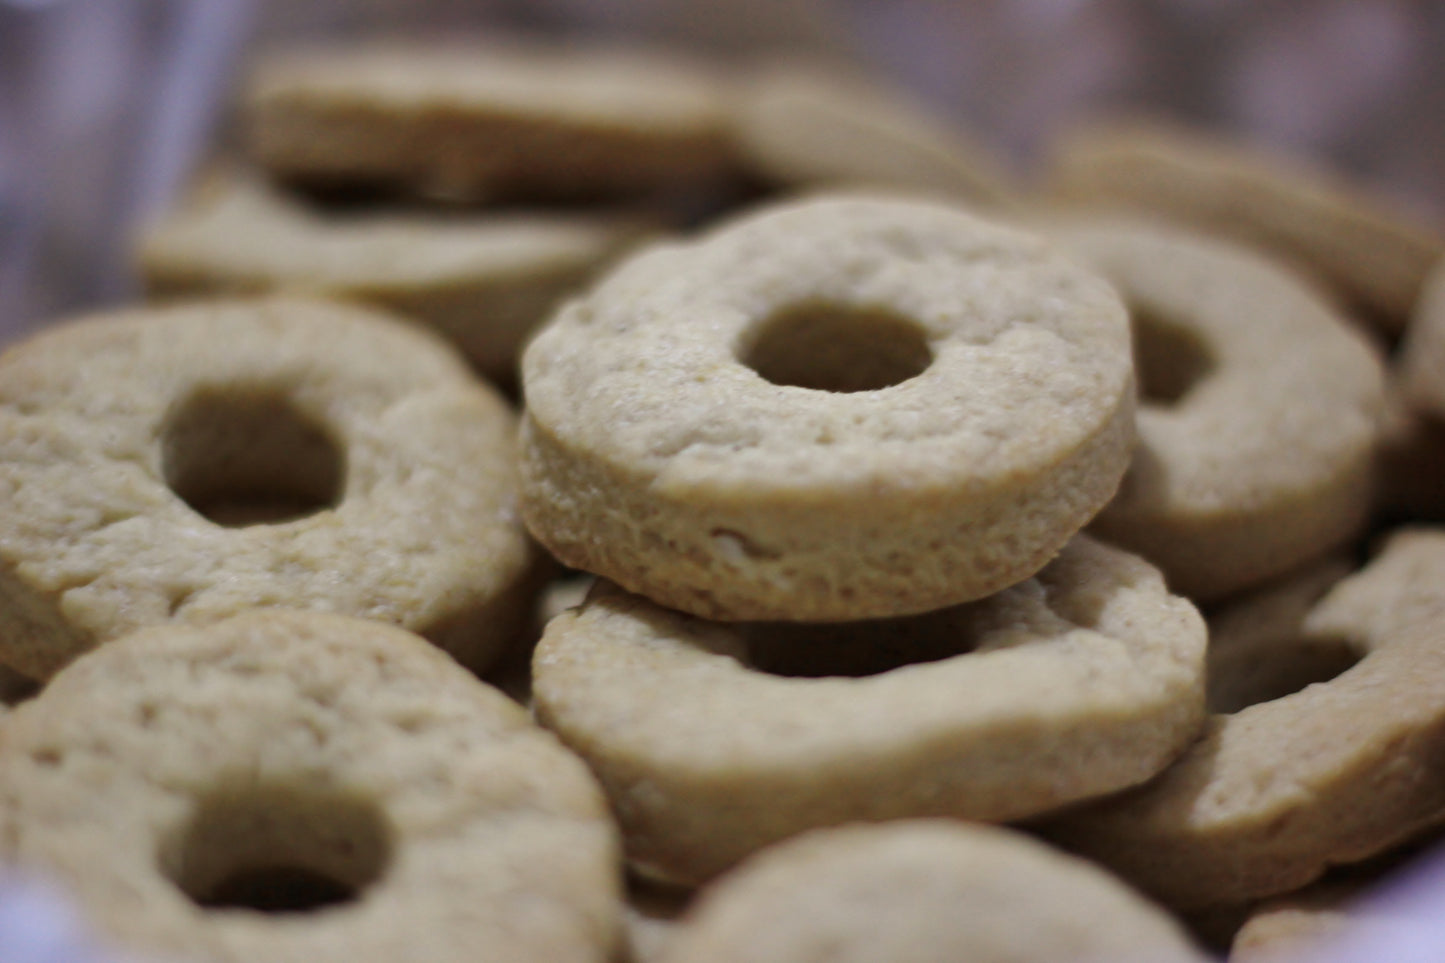 Macinette biscotto Vegan con panna e farina semintegrale 450gr ingredienti biologici